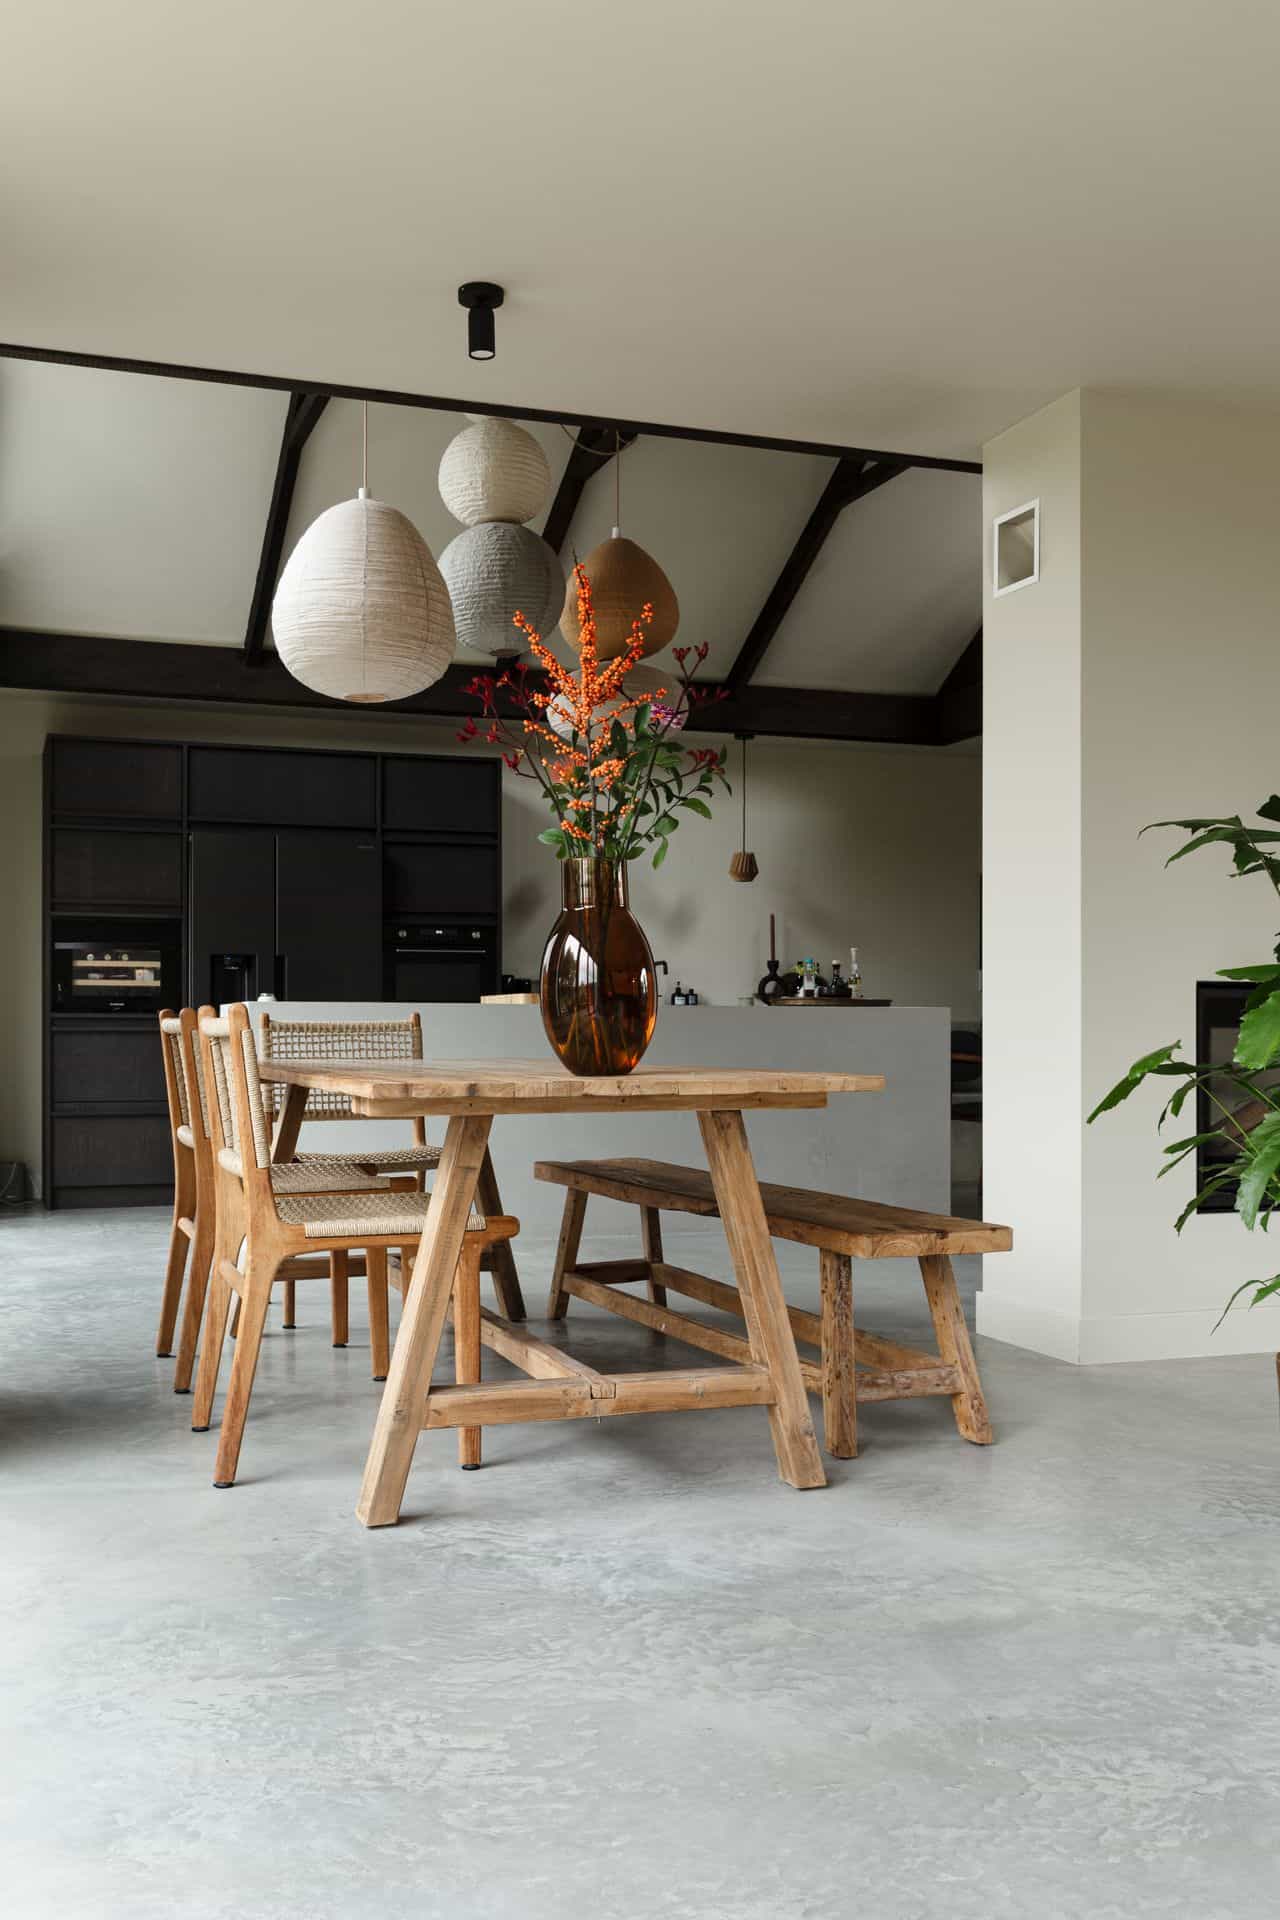 Eetkamer met een gevlinderde betonvloer in Rijnsburg. Hierop staat een houten tafel met houten stoelen en een bankje.